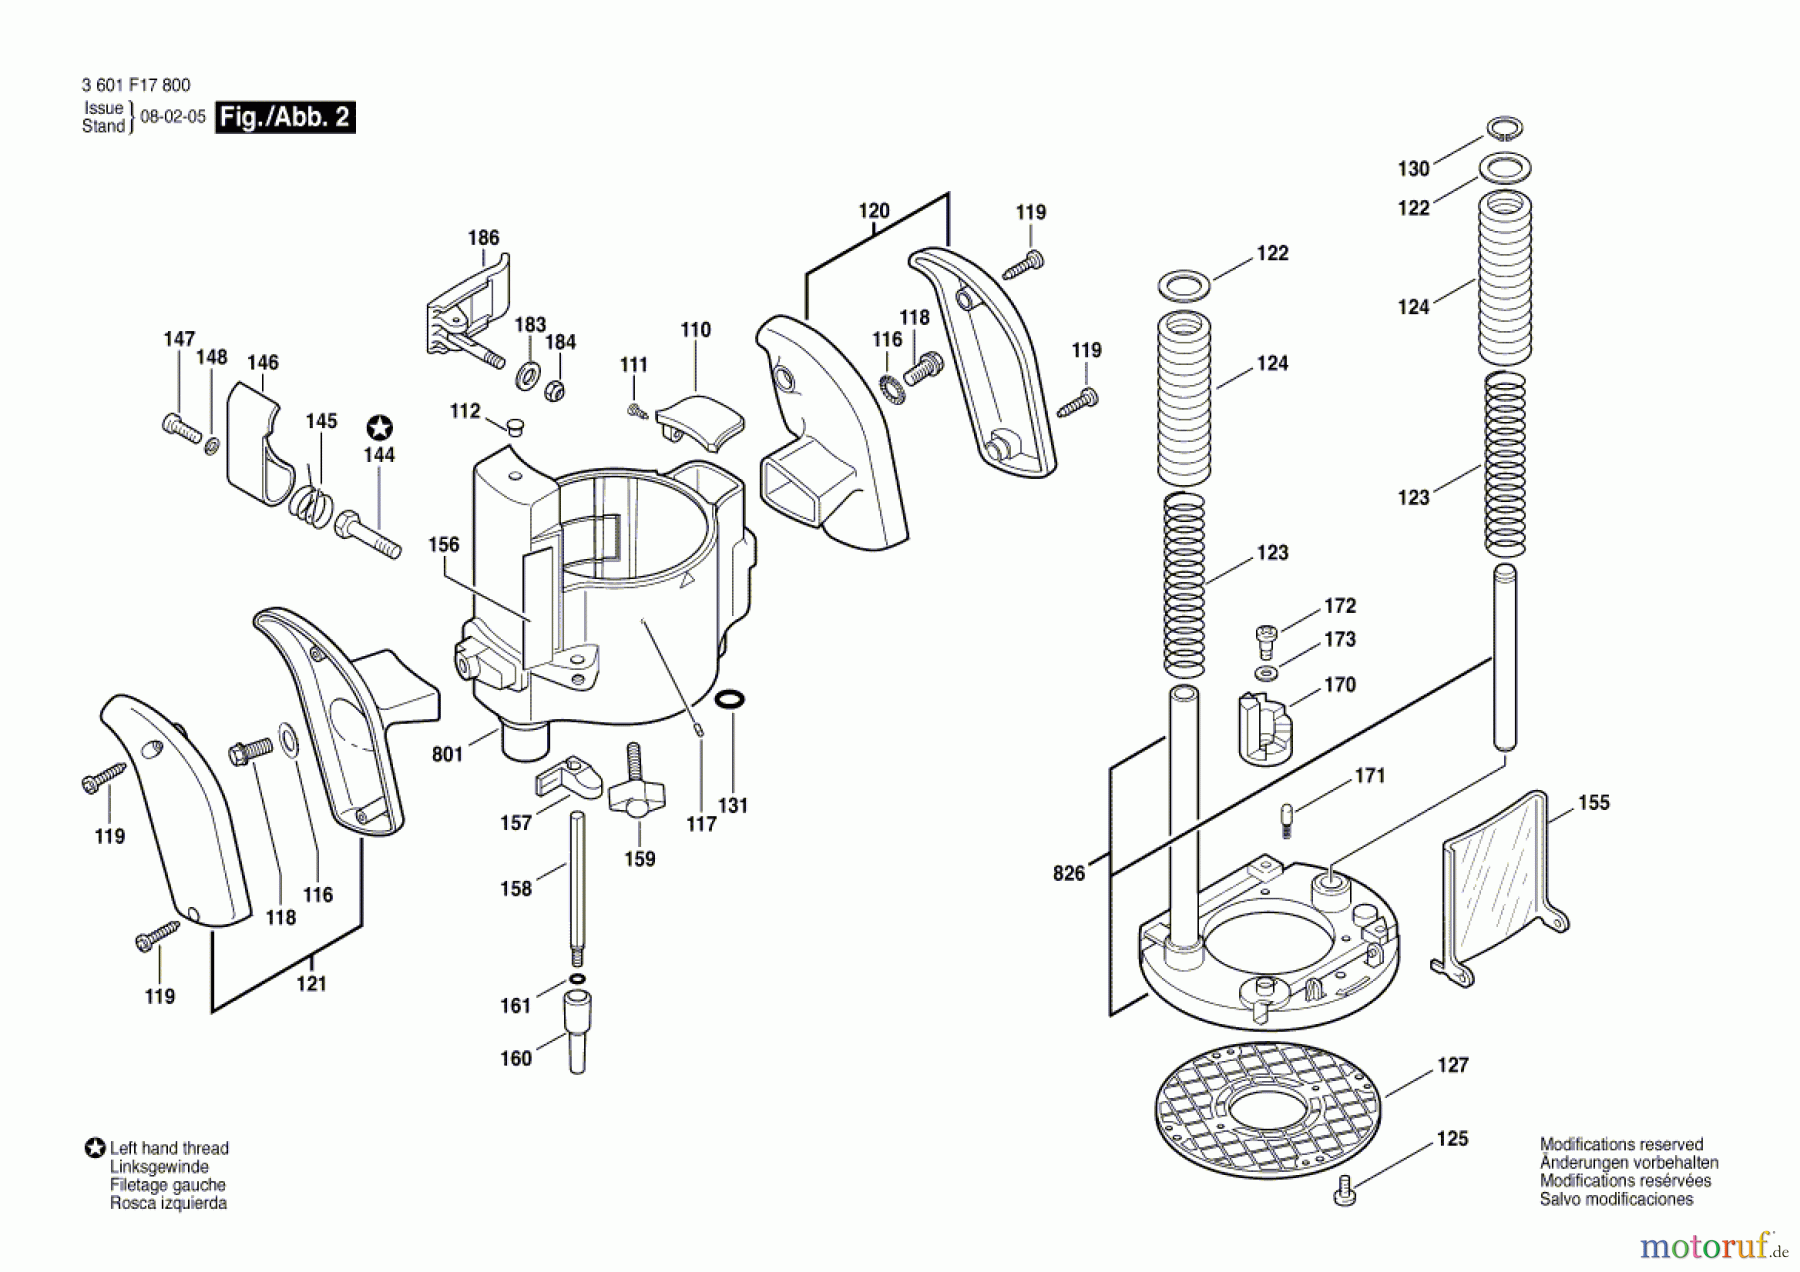  Bosch Werkzeug Oberfräse GMF 1400 CE Seite 2